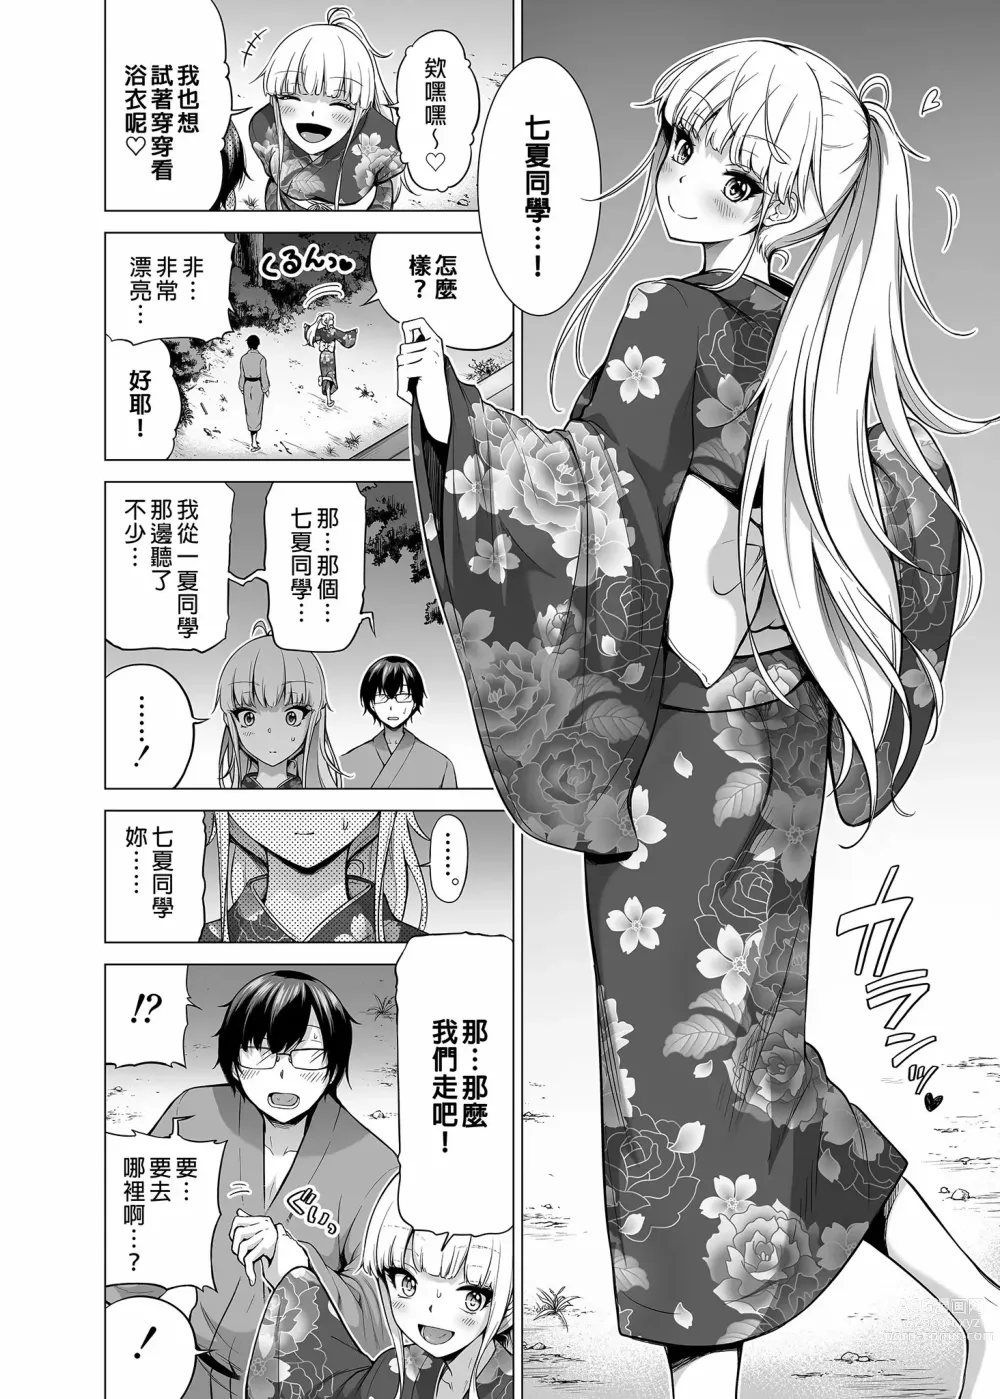 Page 530 of doujinshi 三姐妹1-2 七夏1-6 无马